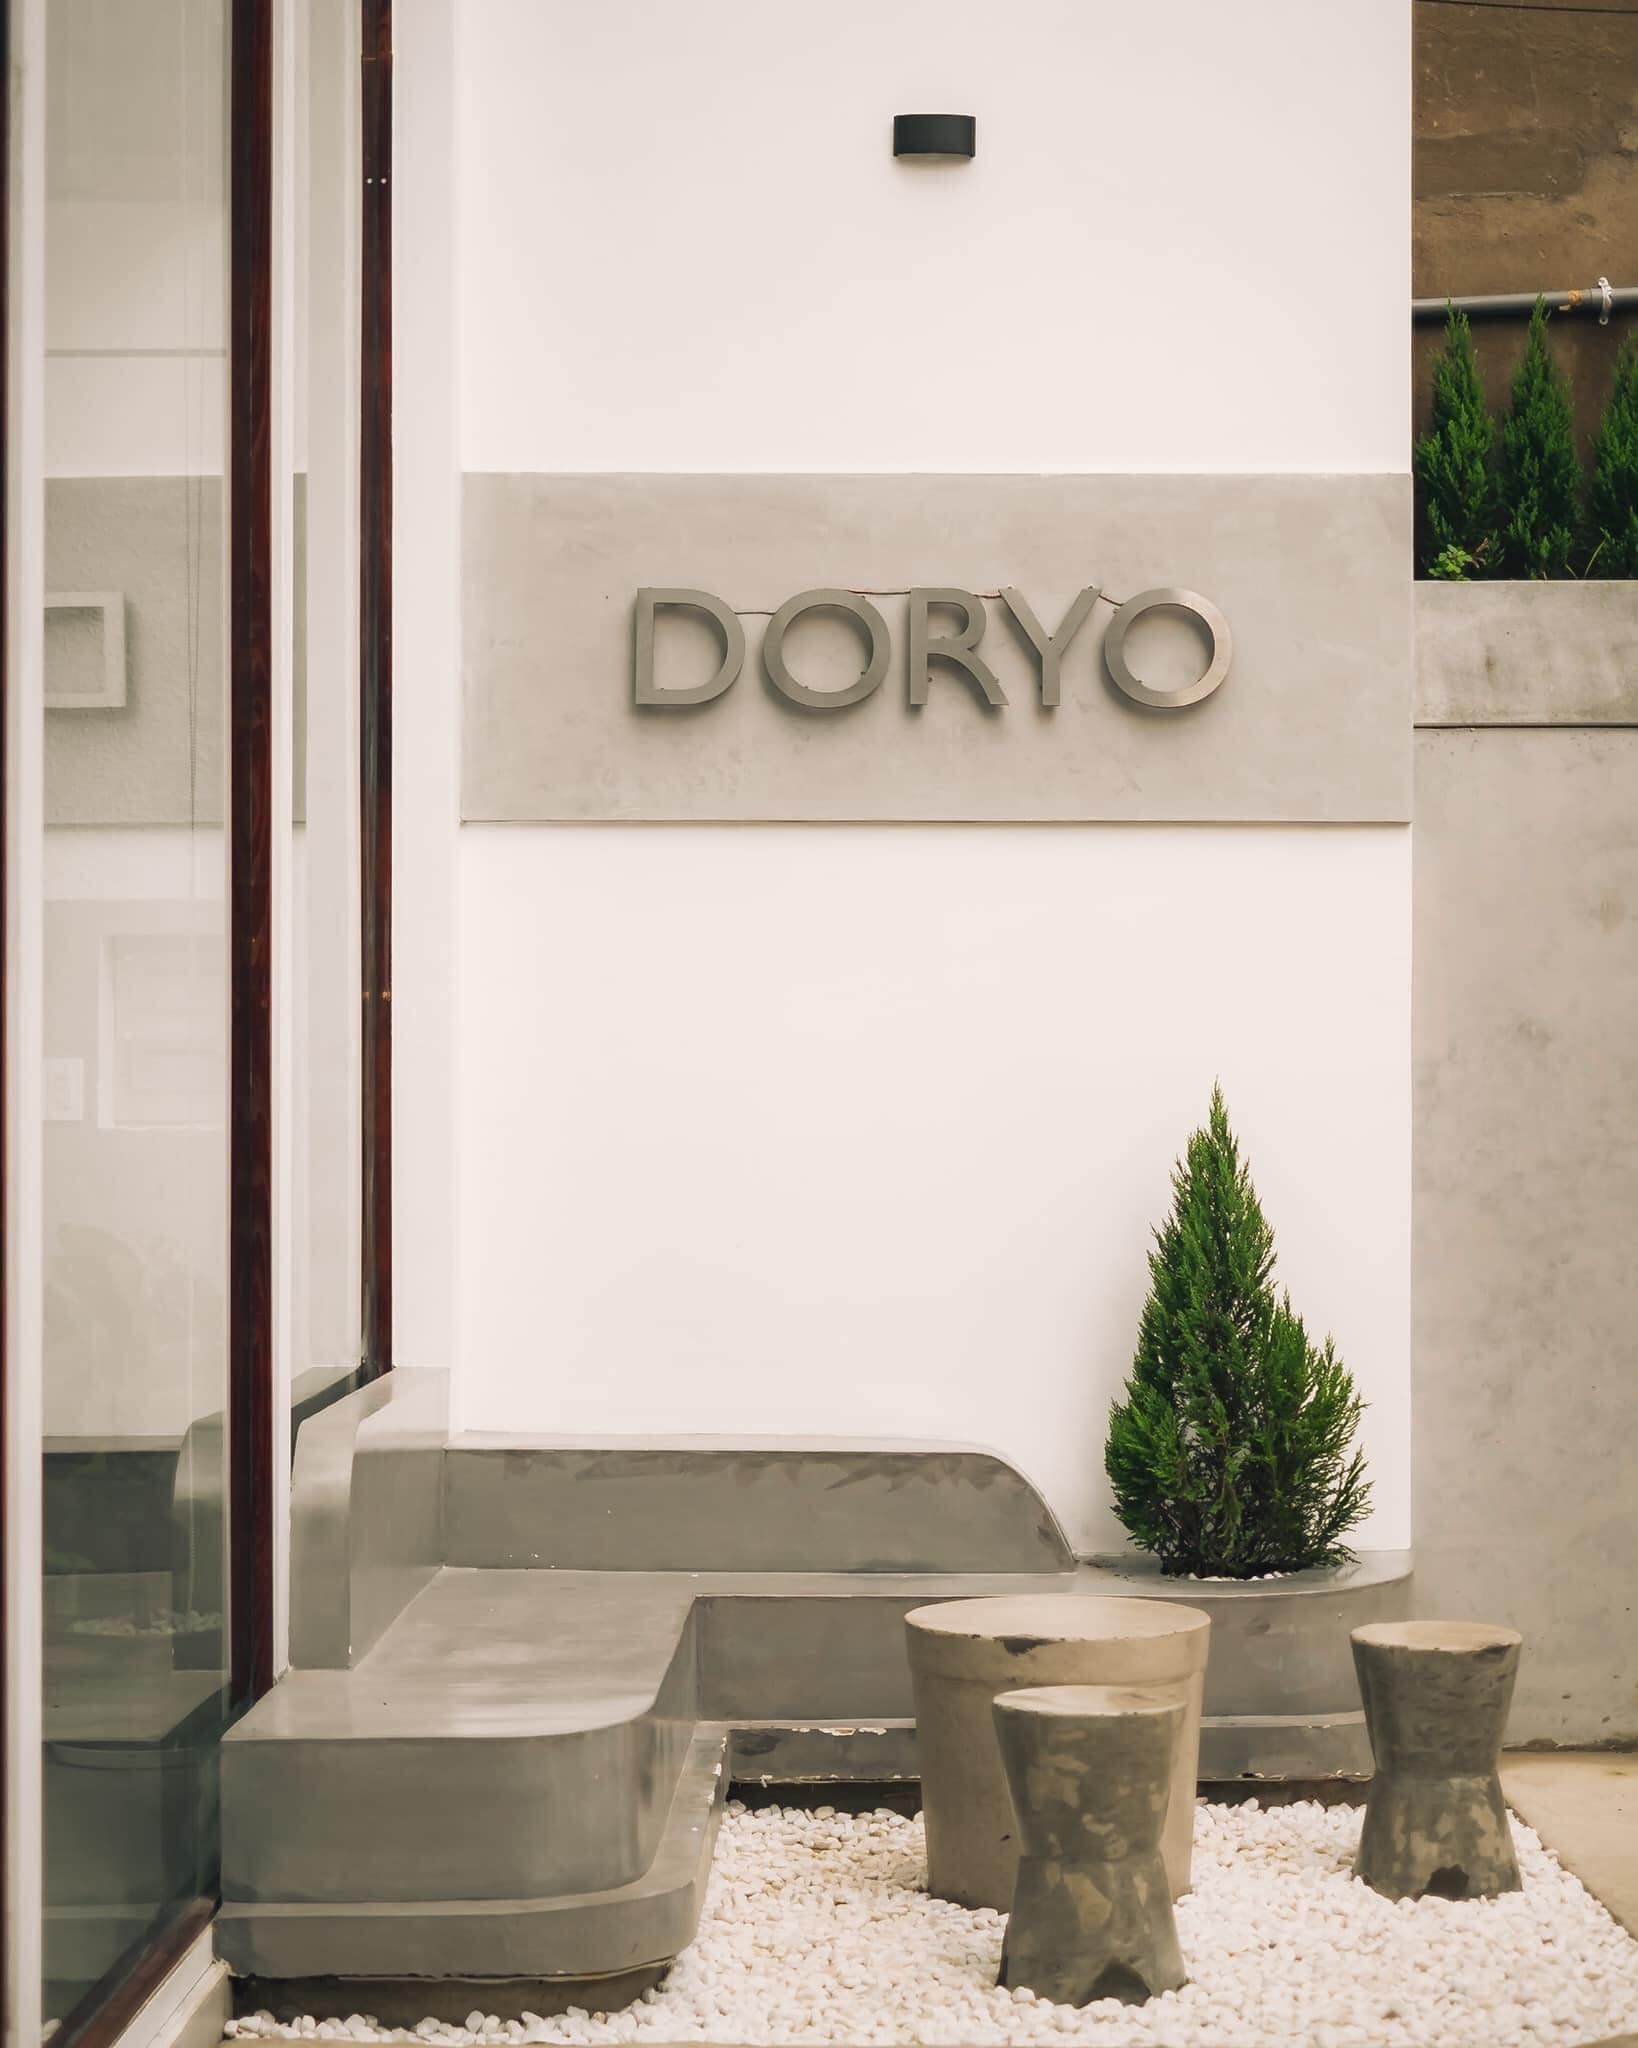 Doryo Cafe - Tea